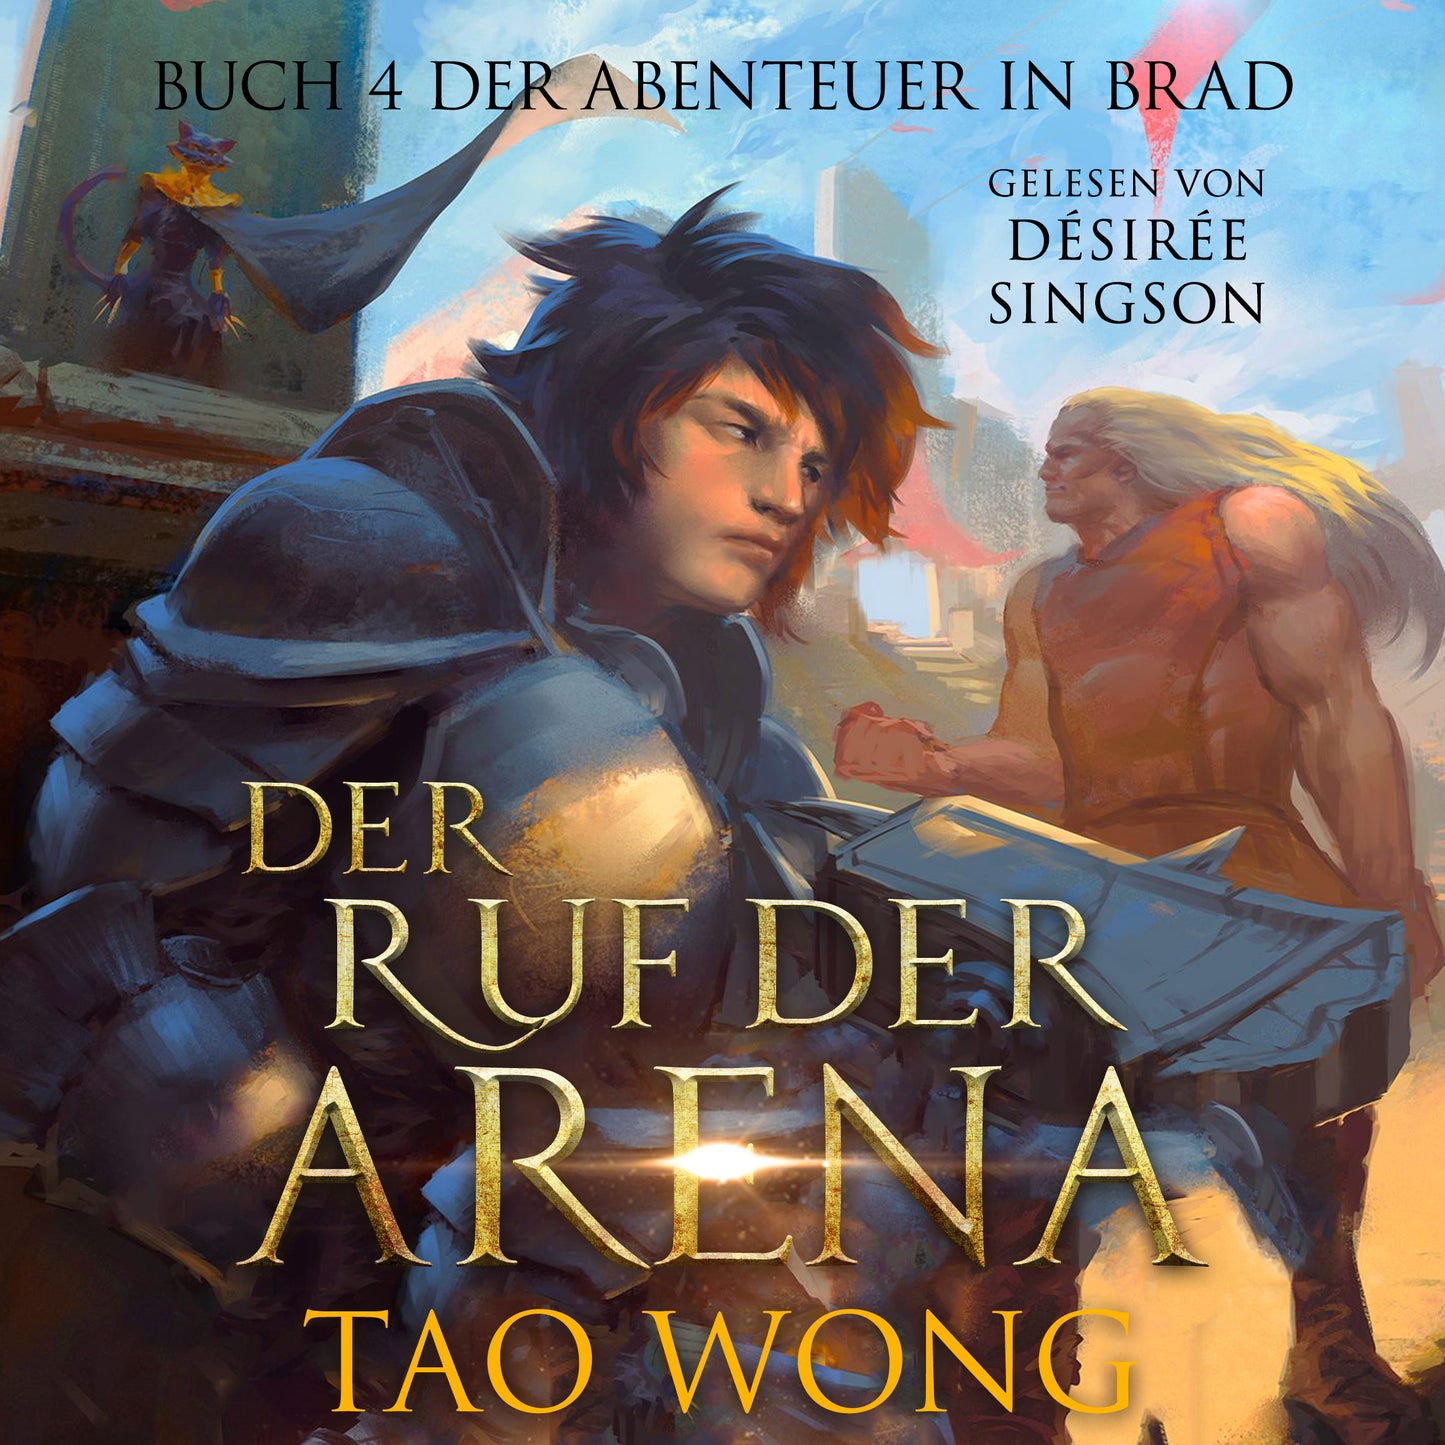 Der Ruf der Arena (Abenteuer in Brad #4)